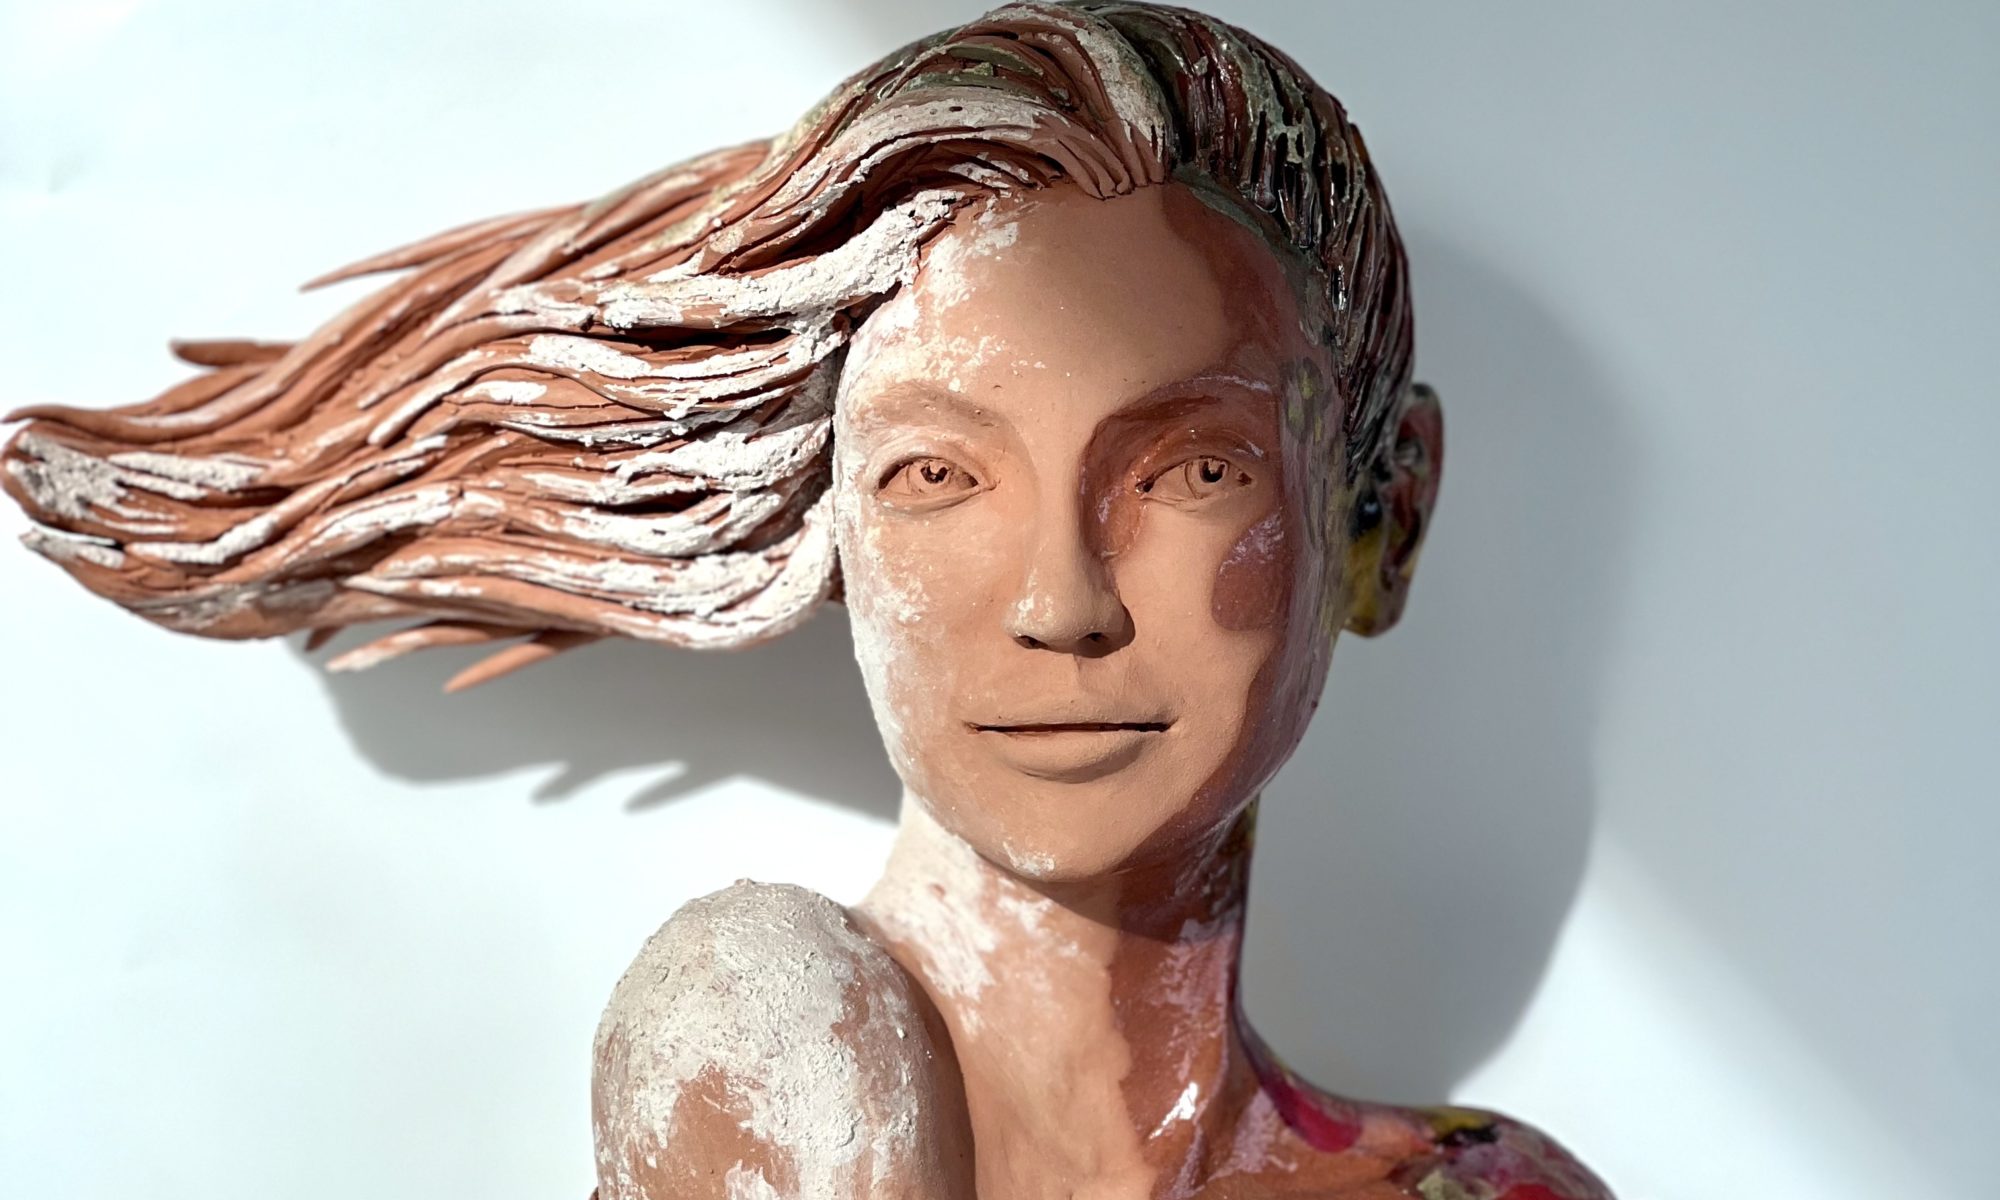 sculpture femme lyon sculpteur art figuratif claire michelini